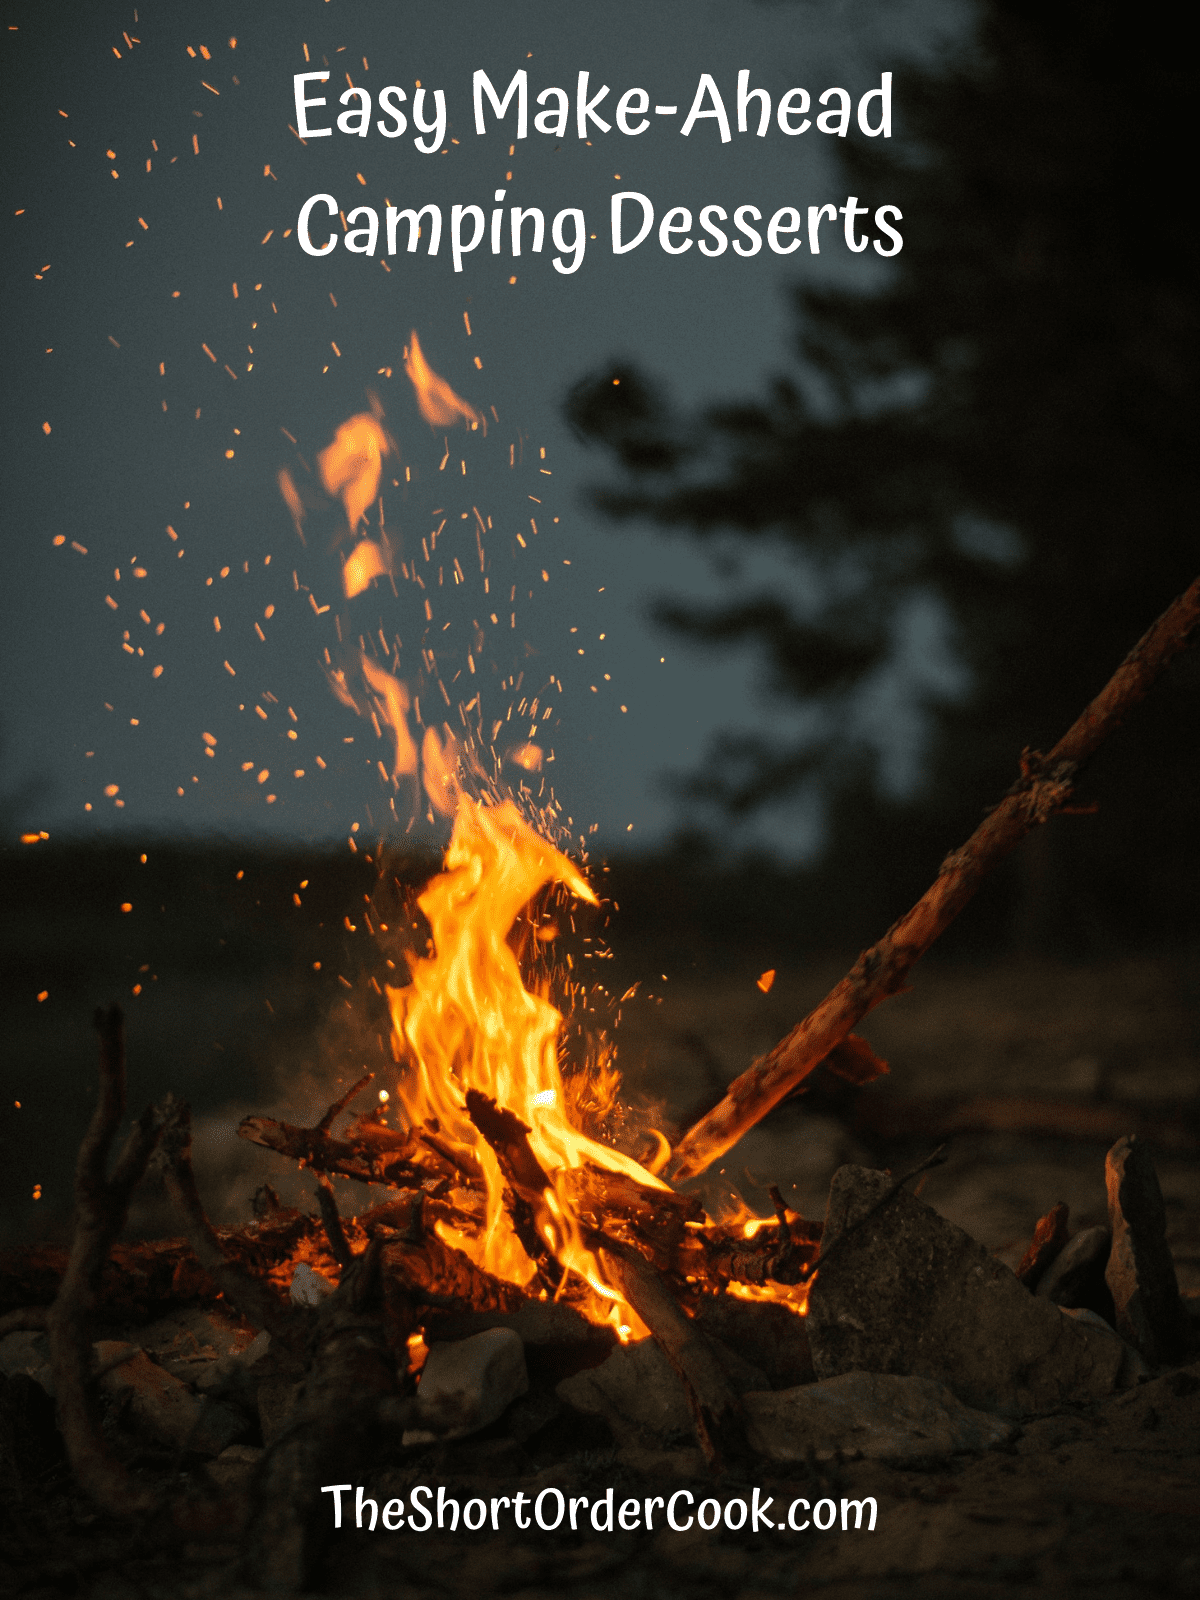 A campfire roaring at night.